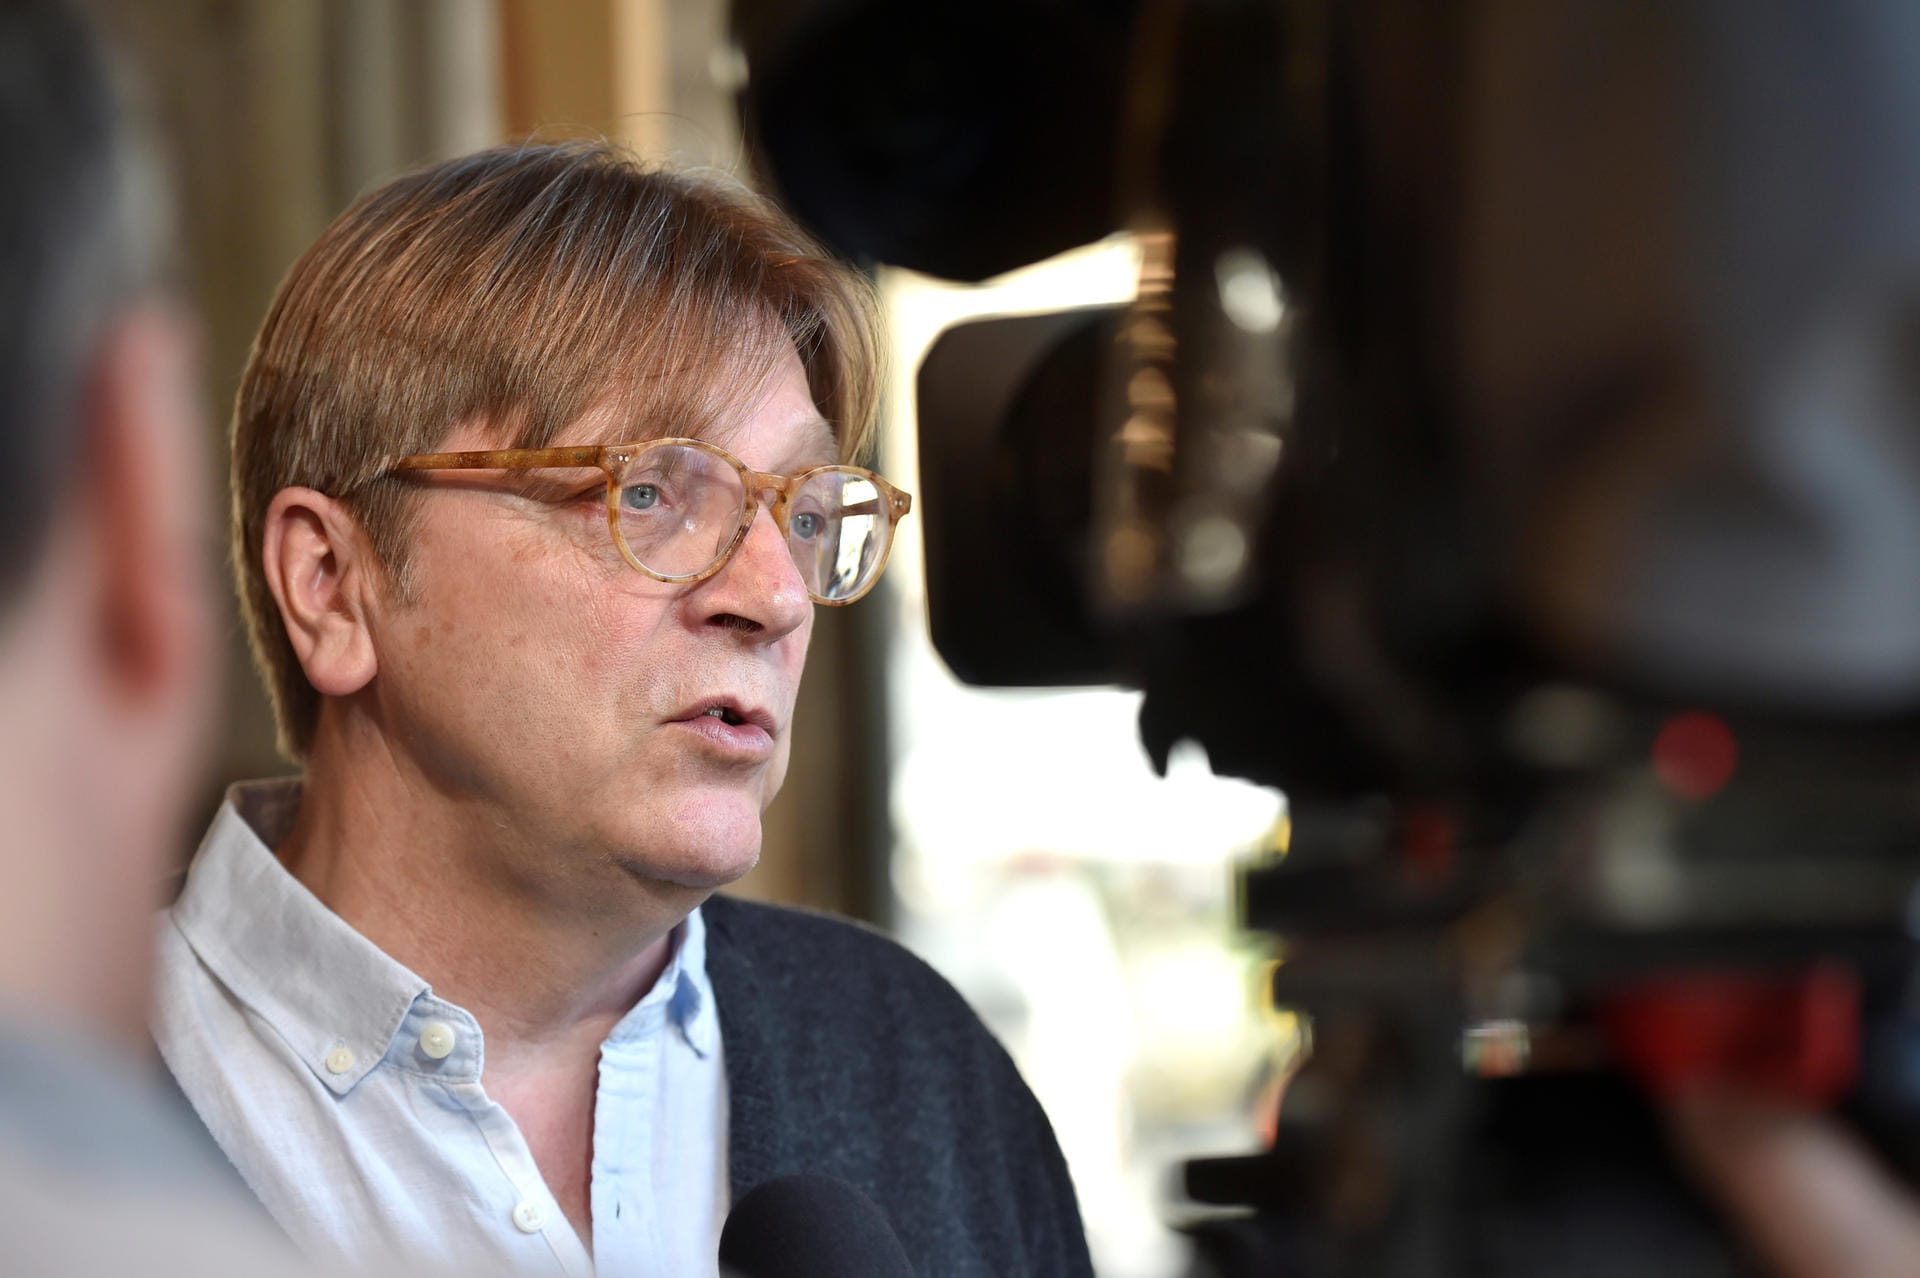 Der Brexit-Beauftragte des Europaparlaments, Guy Verhofstadt: "Die Unterdrückung einer Debatte über tiefgreifende Entscheidungen wird wahrscheinlich nicht zu einer stabilen künftigen Beziehung zwischen der EU und Großbritannien beitragen."